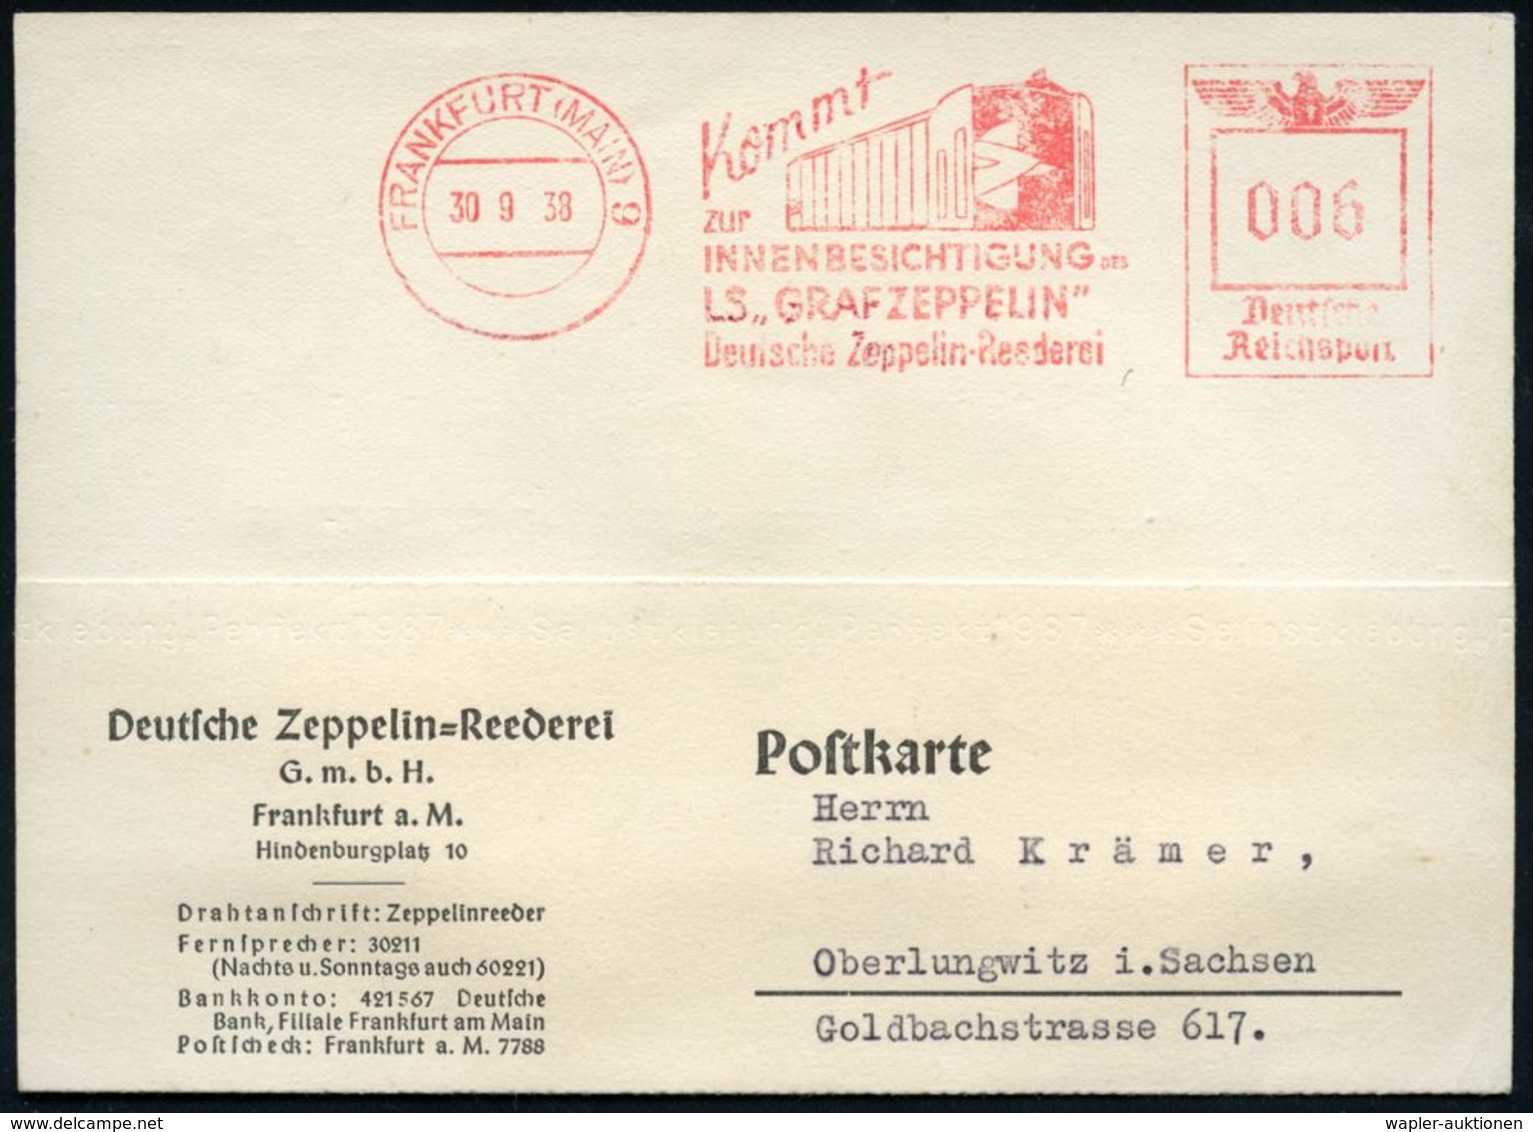 FRANKFURT (MAIN) 9/ Kommt/ Zur/ INNENBESICHTIGUNG DES/ LS. "GRAF ZEPPELIN"/ Deutsche Zeppelin-Reederei 1938 (30.9.) Selt - Zeppelins